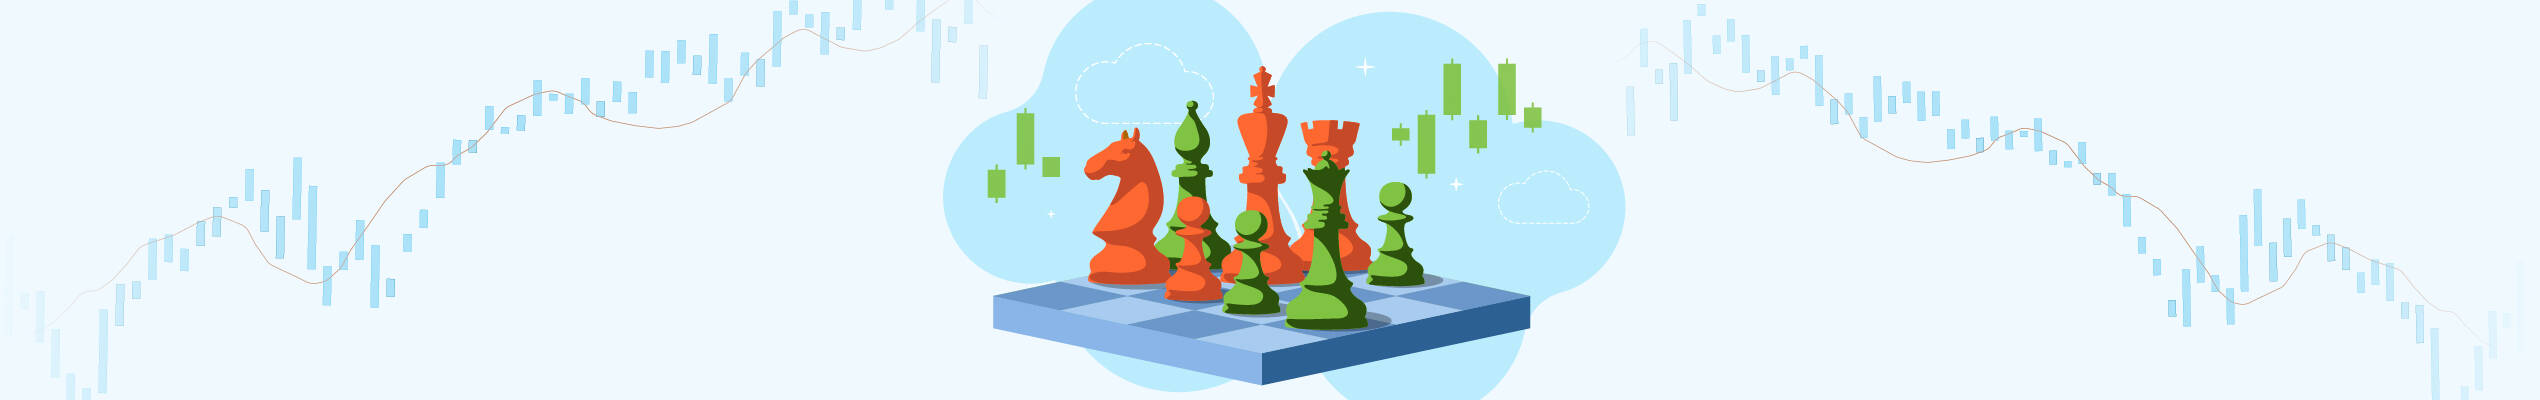 Estratégia do gambito: equilíbrio de riscos e ganhos